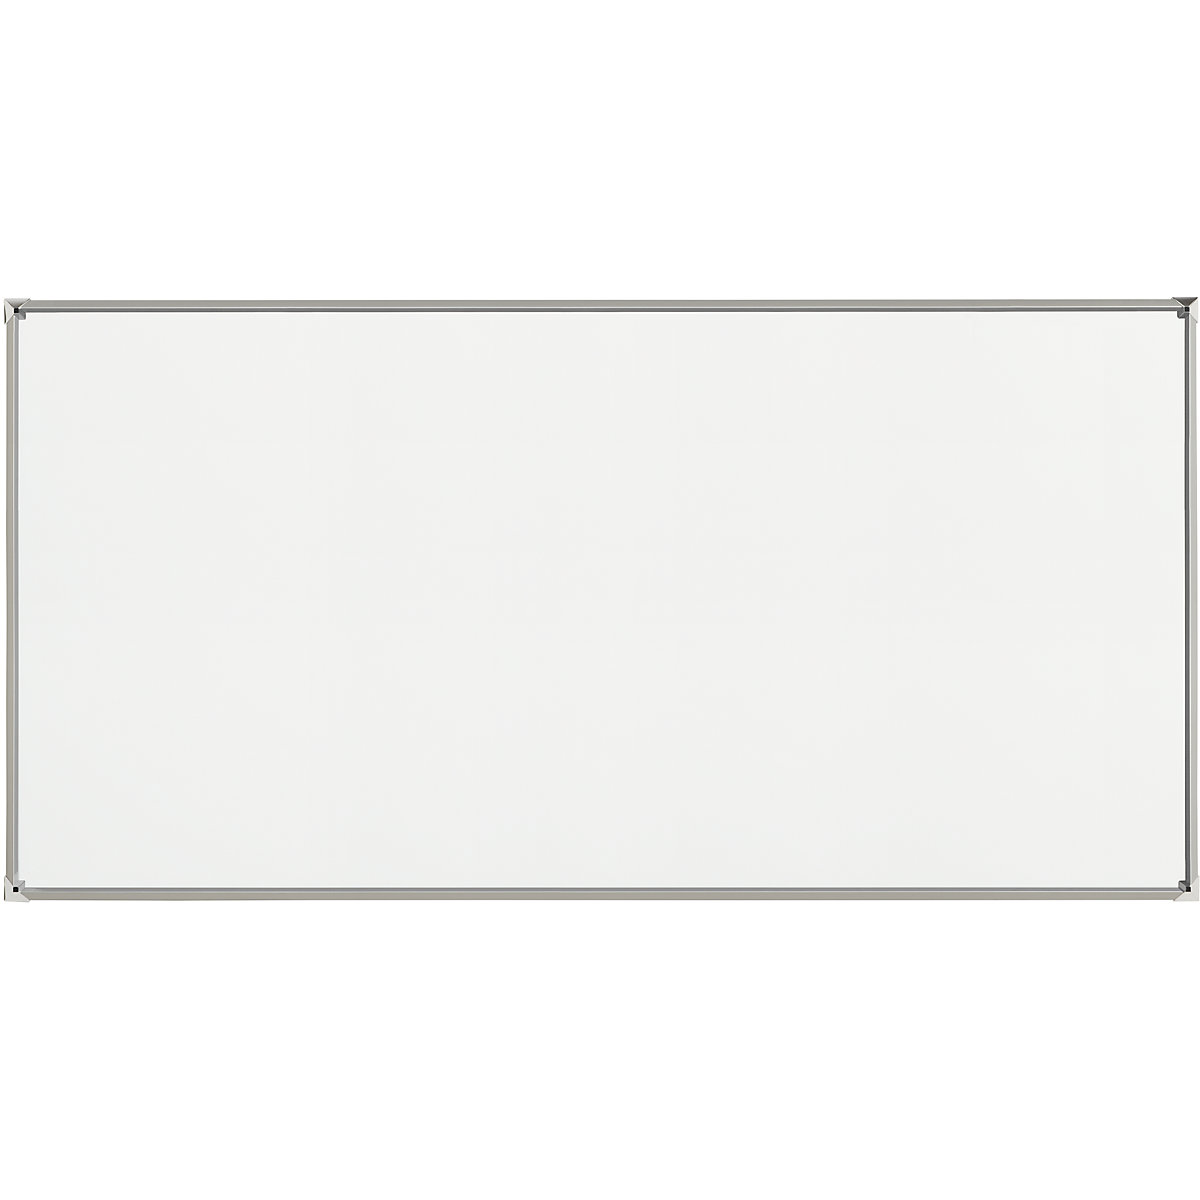 EUROKRAFTpro – Tablica biała z designerską ramą, blacha stalowa, emaliowana, szer. x wys. 2400 x 1200 mm, rama srebrna